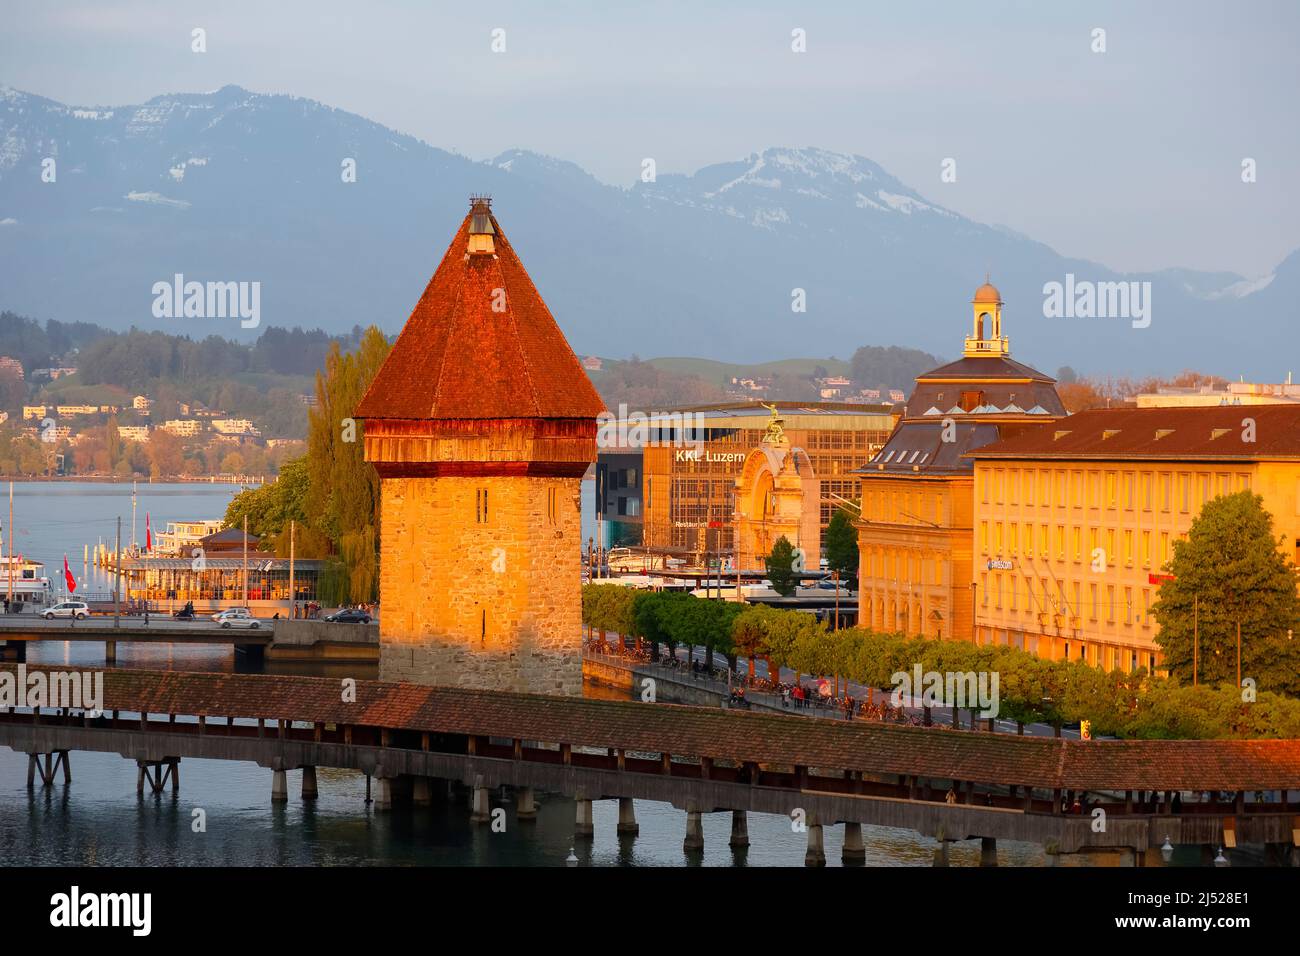 Lucerna, Suiza - 02 de mayo de 2016: Vista nocturna de la torre octogonal que fue construida en el río Reuss y se encuentra junto a la Capilla cubierta Foto de stock